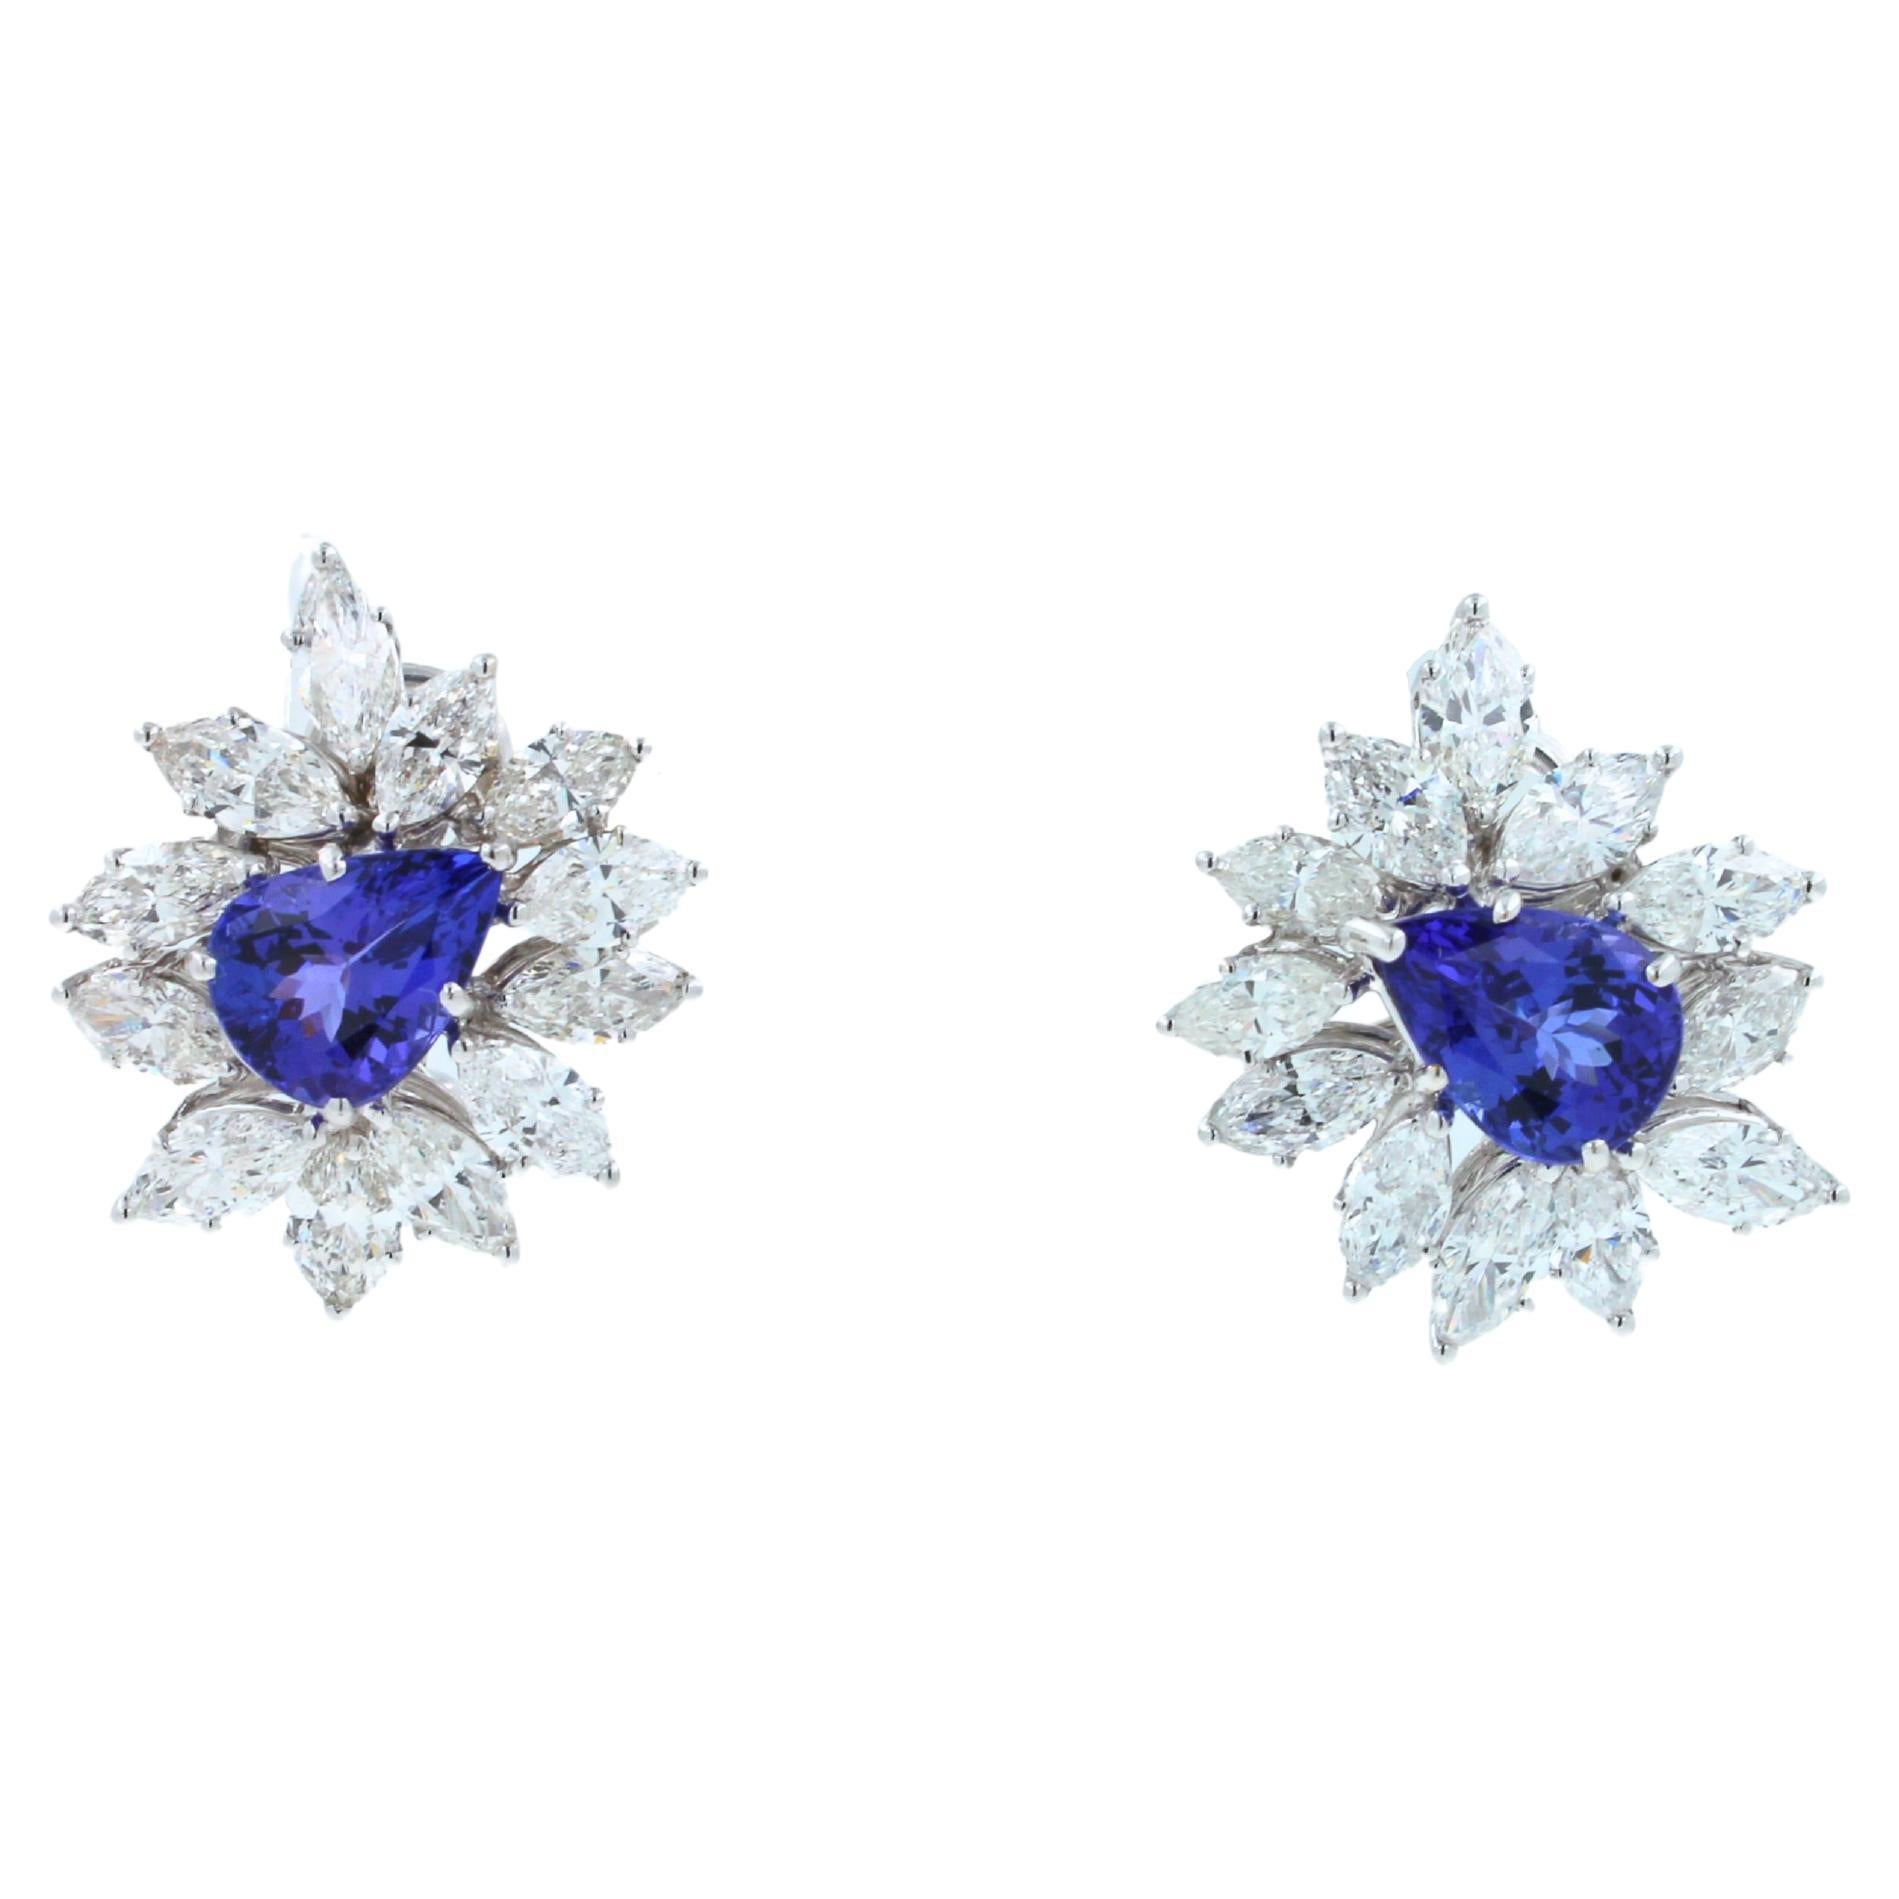 18K Weißgold
8 Karat Violett - Blauer Birnenschliff - Tropfenform Tansanite
13,00 ctw - G/VS-Diamanten 
15 Gramm
24 mm lange Ohrringe 

